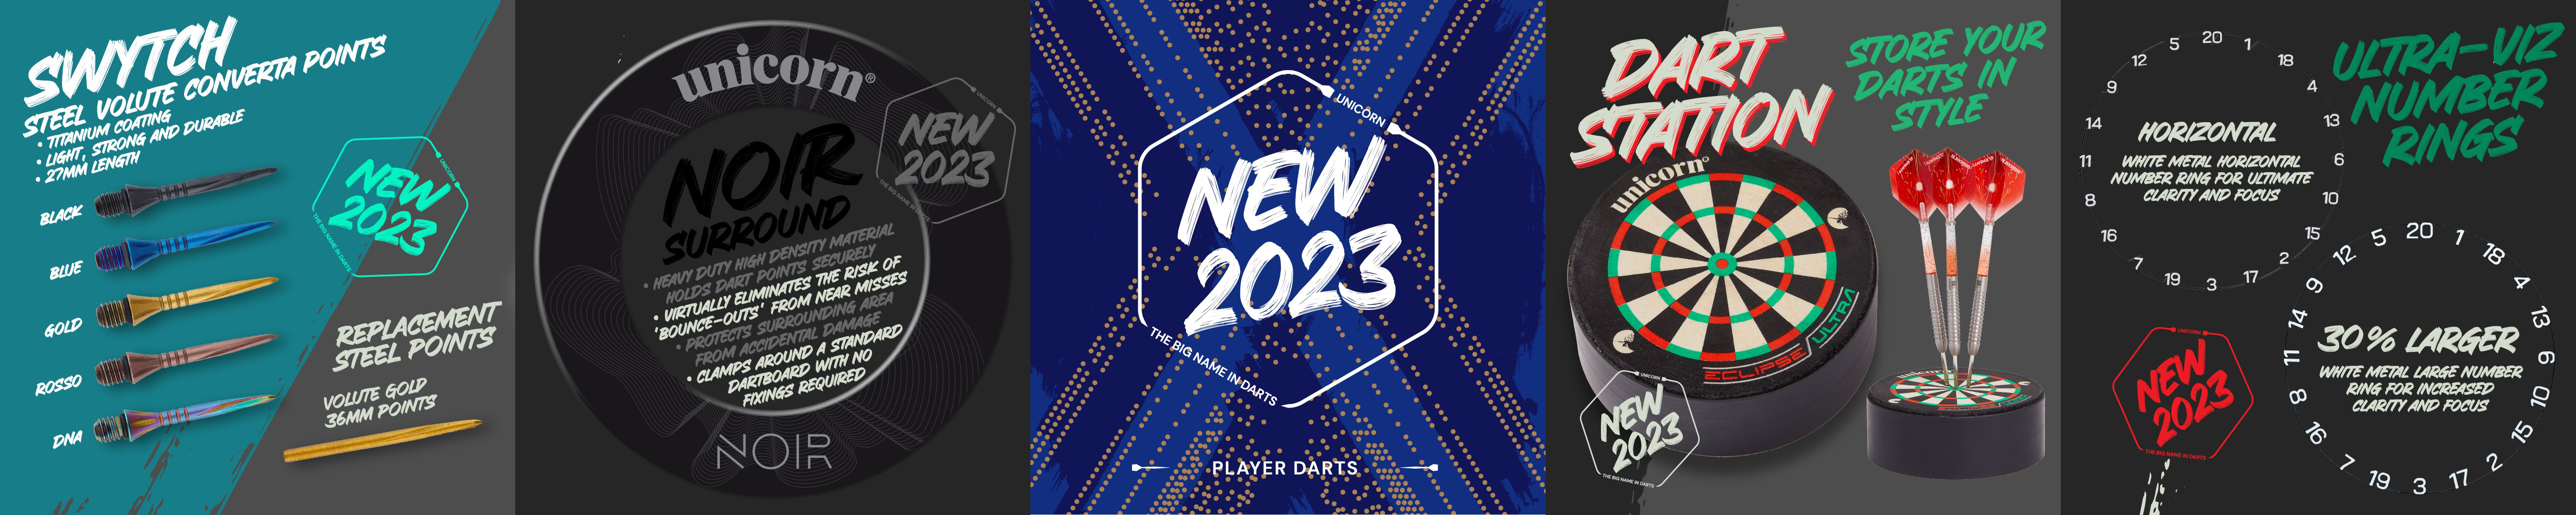 unicorn Dart Launch 2023 Dart Neuheiten News 2022 - 2023 Steel & Softdarts Gary Anderson W.C. Phase 6, Silverstar Blue, Jeffrey de Zwaan P2, Ian White P2, Seigo Asada P3, Noir Dart Case, Surround, Two Tone Shafts 2023